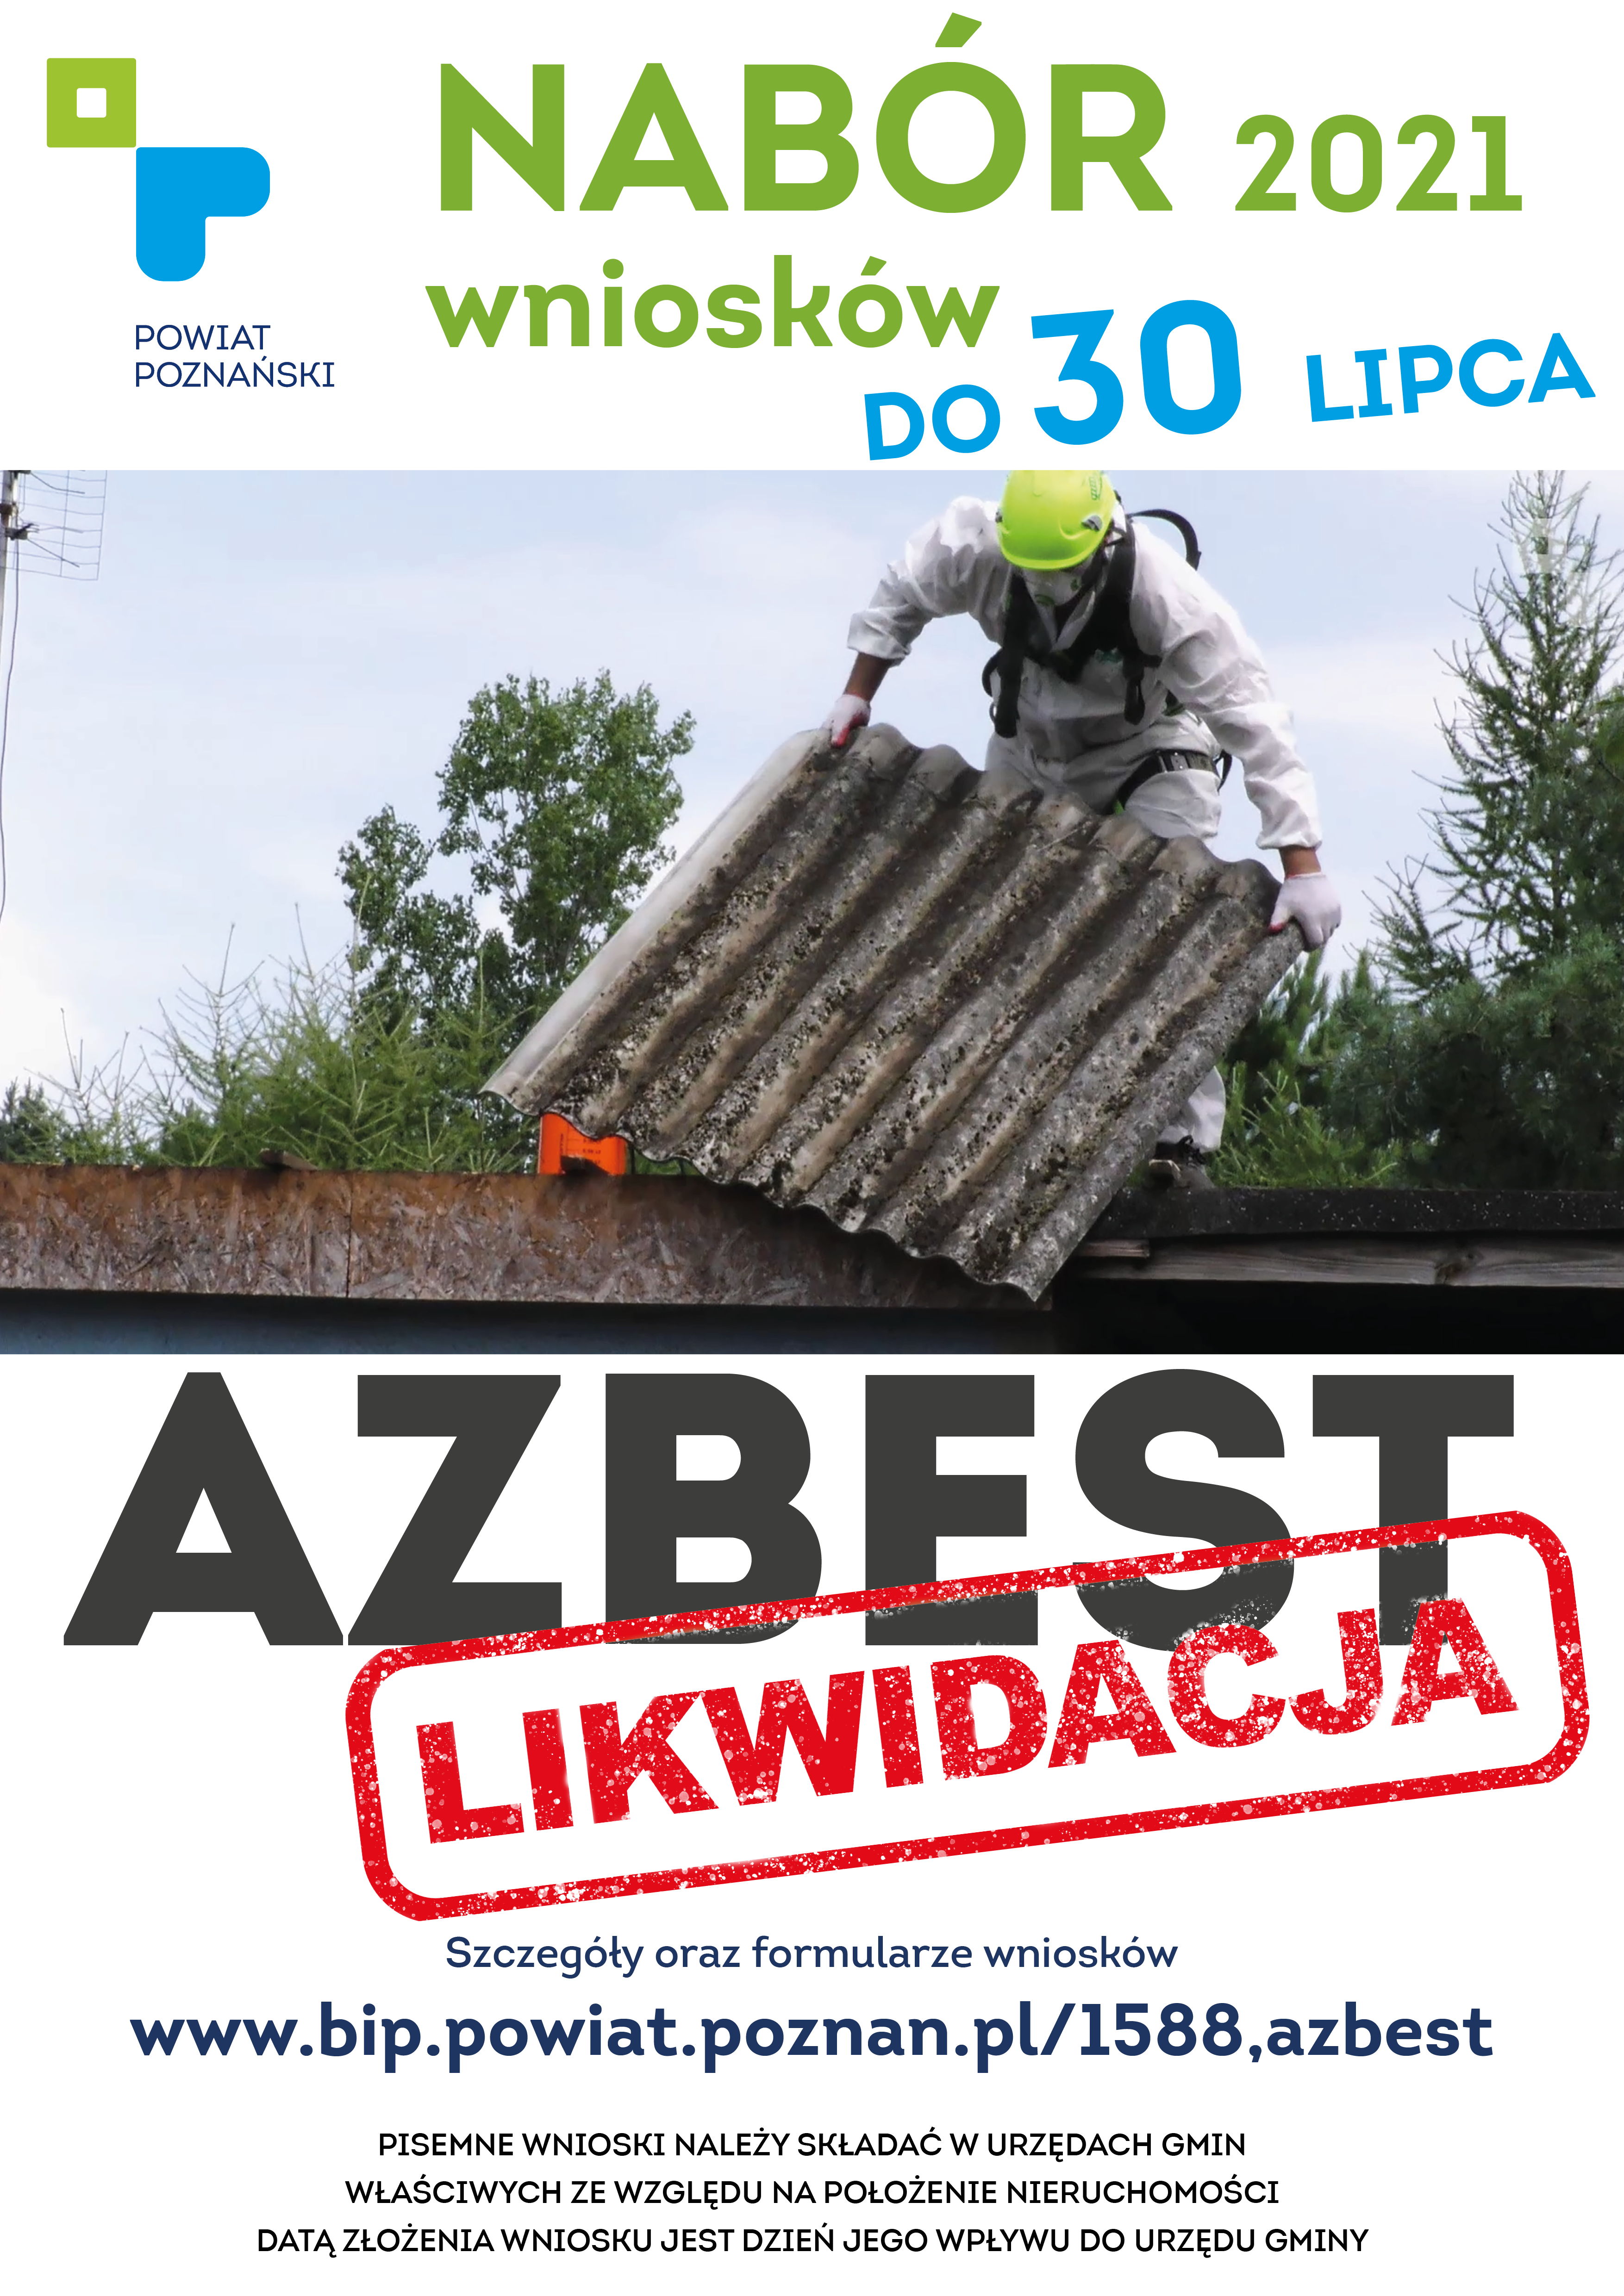 azbest 2021  - Azbest likwidacja - ruszył nabór wniosków